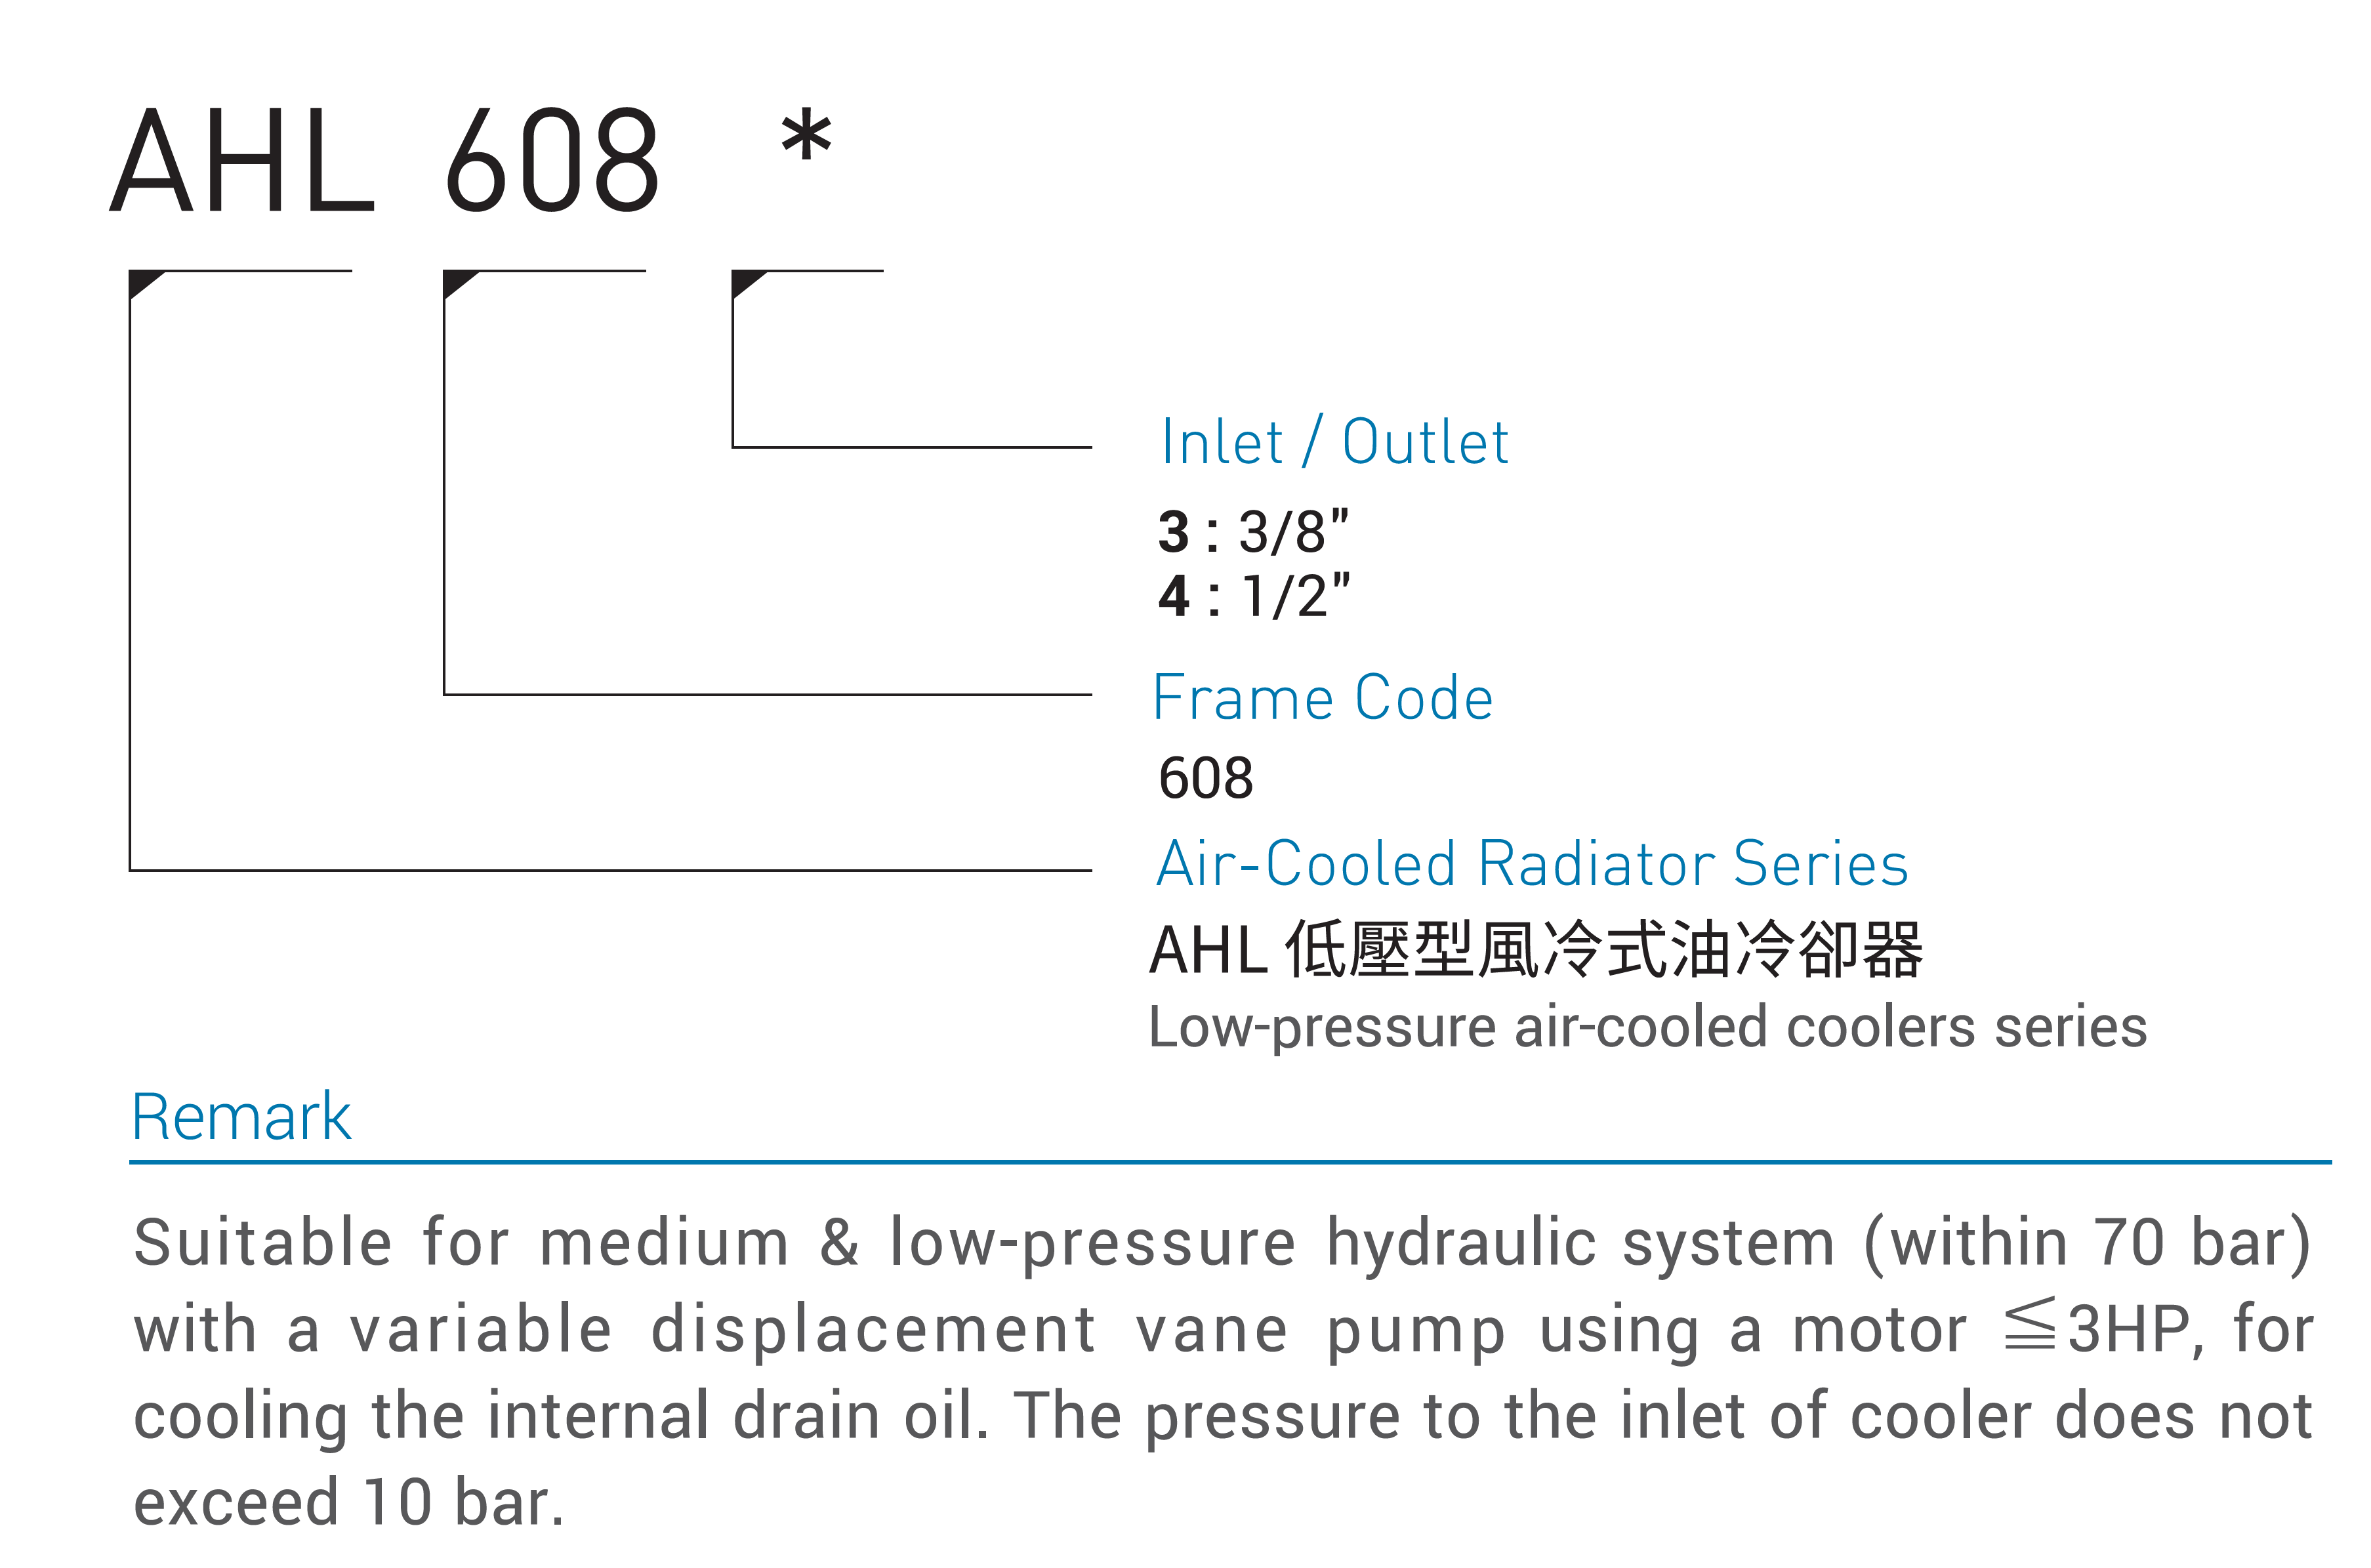 CML低圧型エアコールドラジエーターモデルコード、注文方法